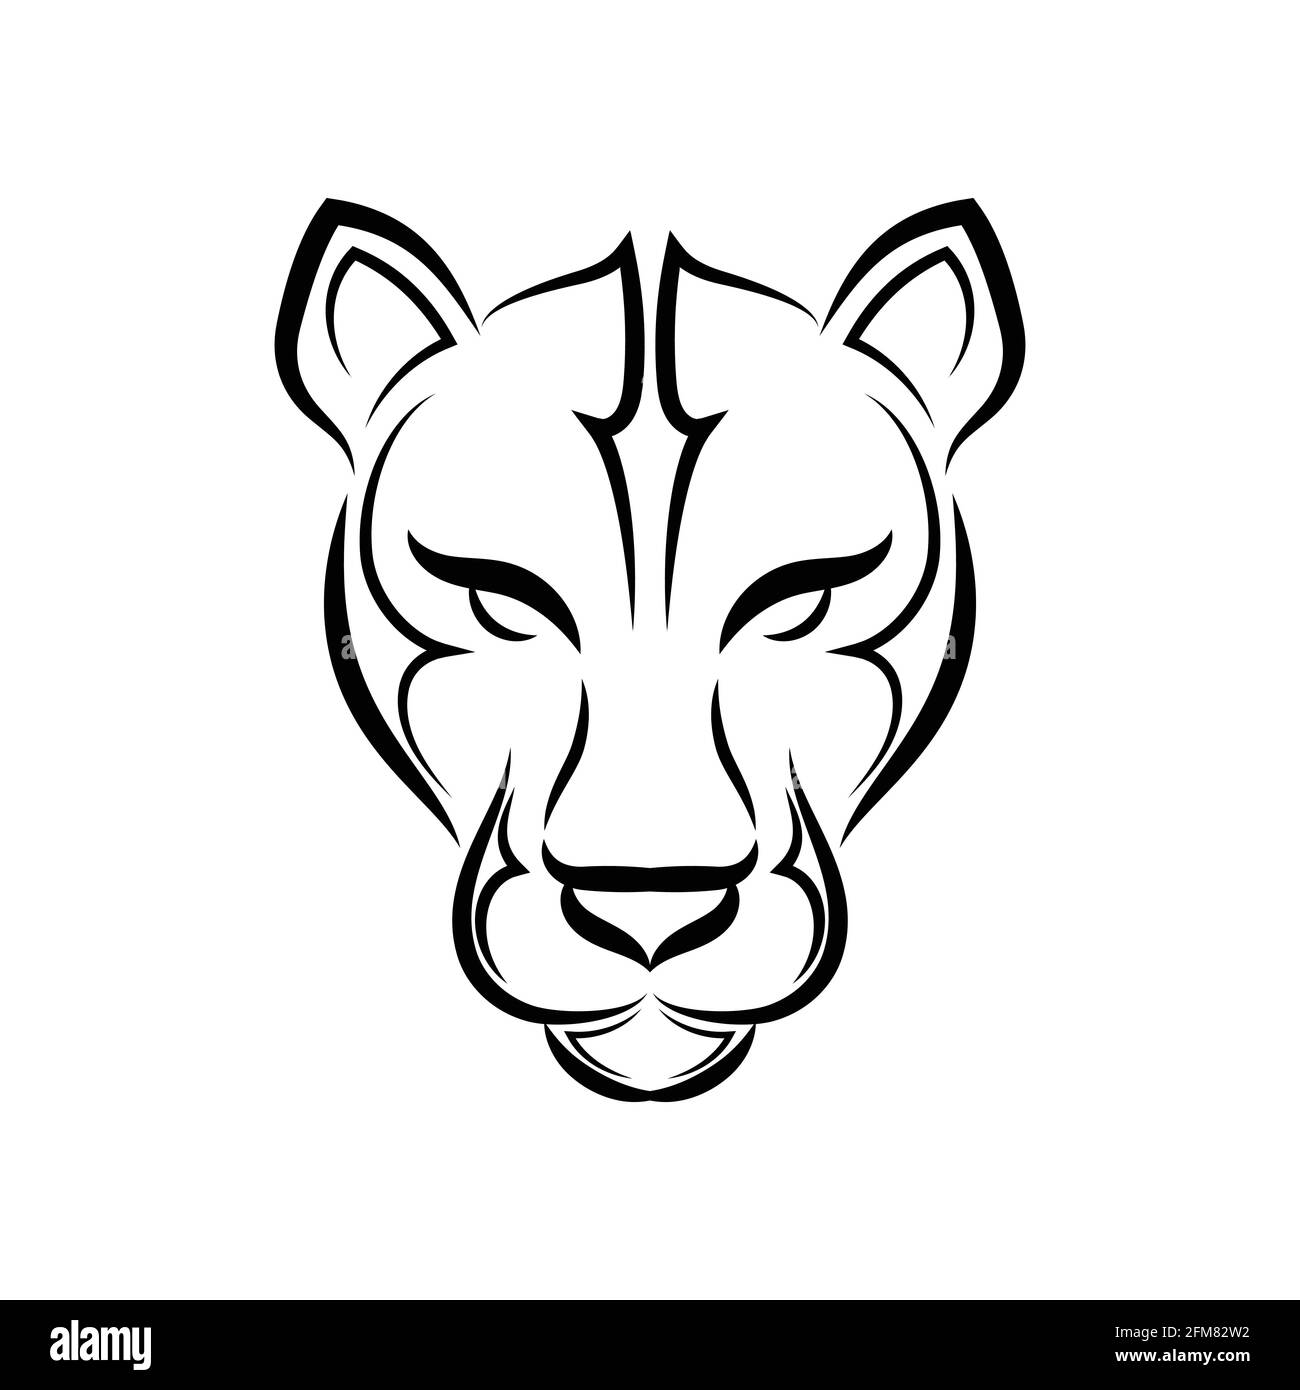 Schwarz-weiße Linienkunst des Puma-Kopfes. Gute Verwendung für Symbol,  Maskottchen, Symbol, Avatar, Tattoo, T-Shirt-Design, Logo oder ein  beliebiges Design Stock-Vektorgrafik - Alamy